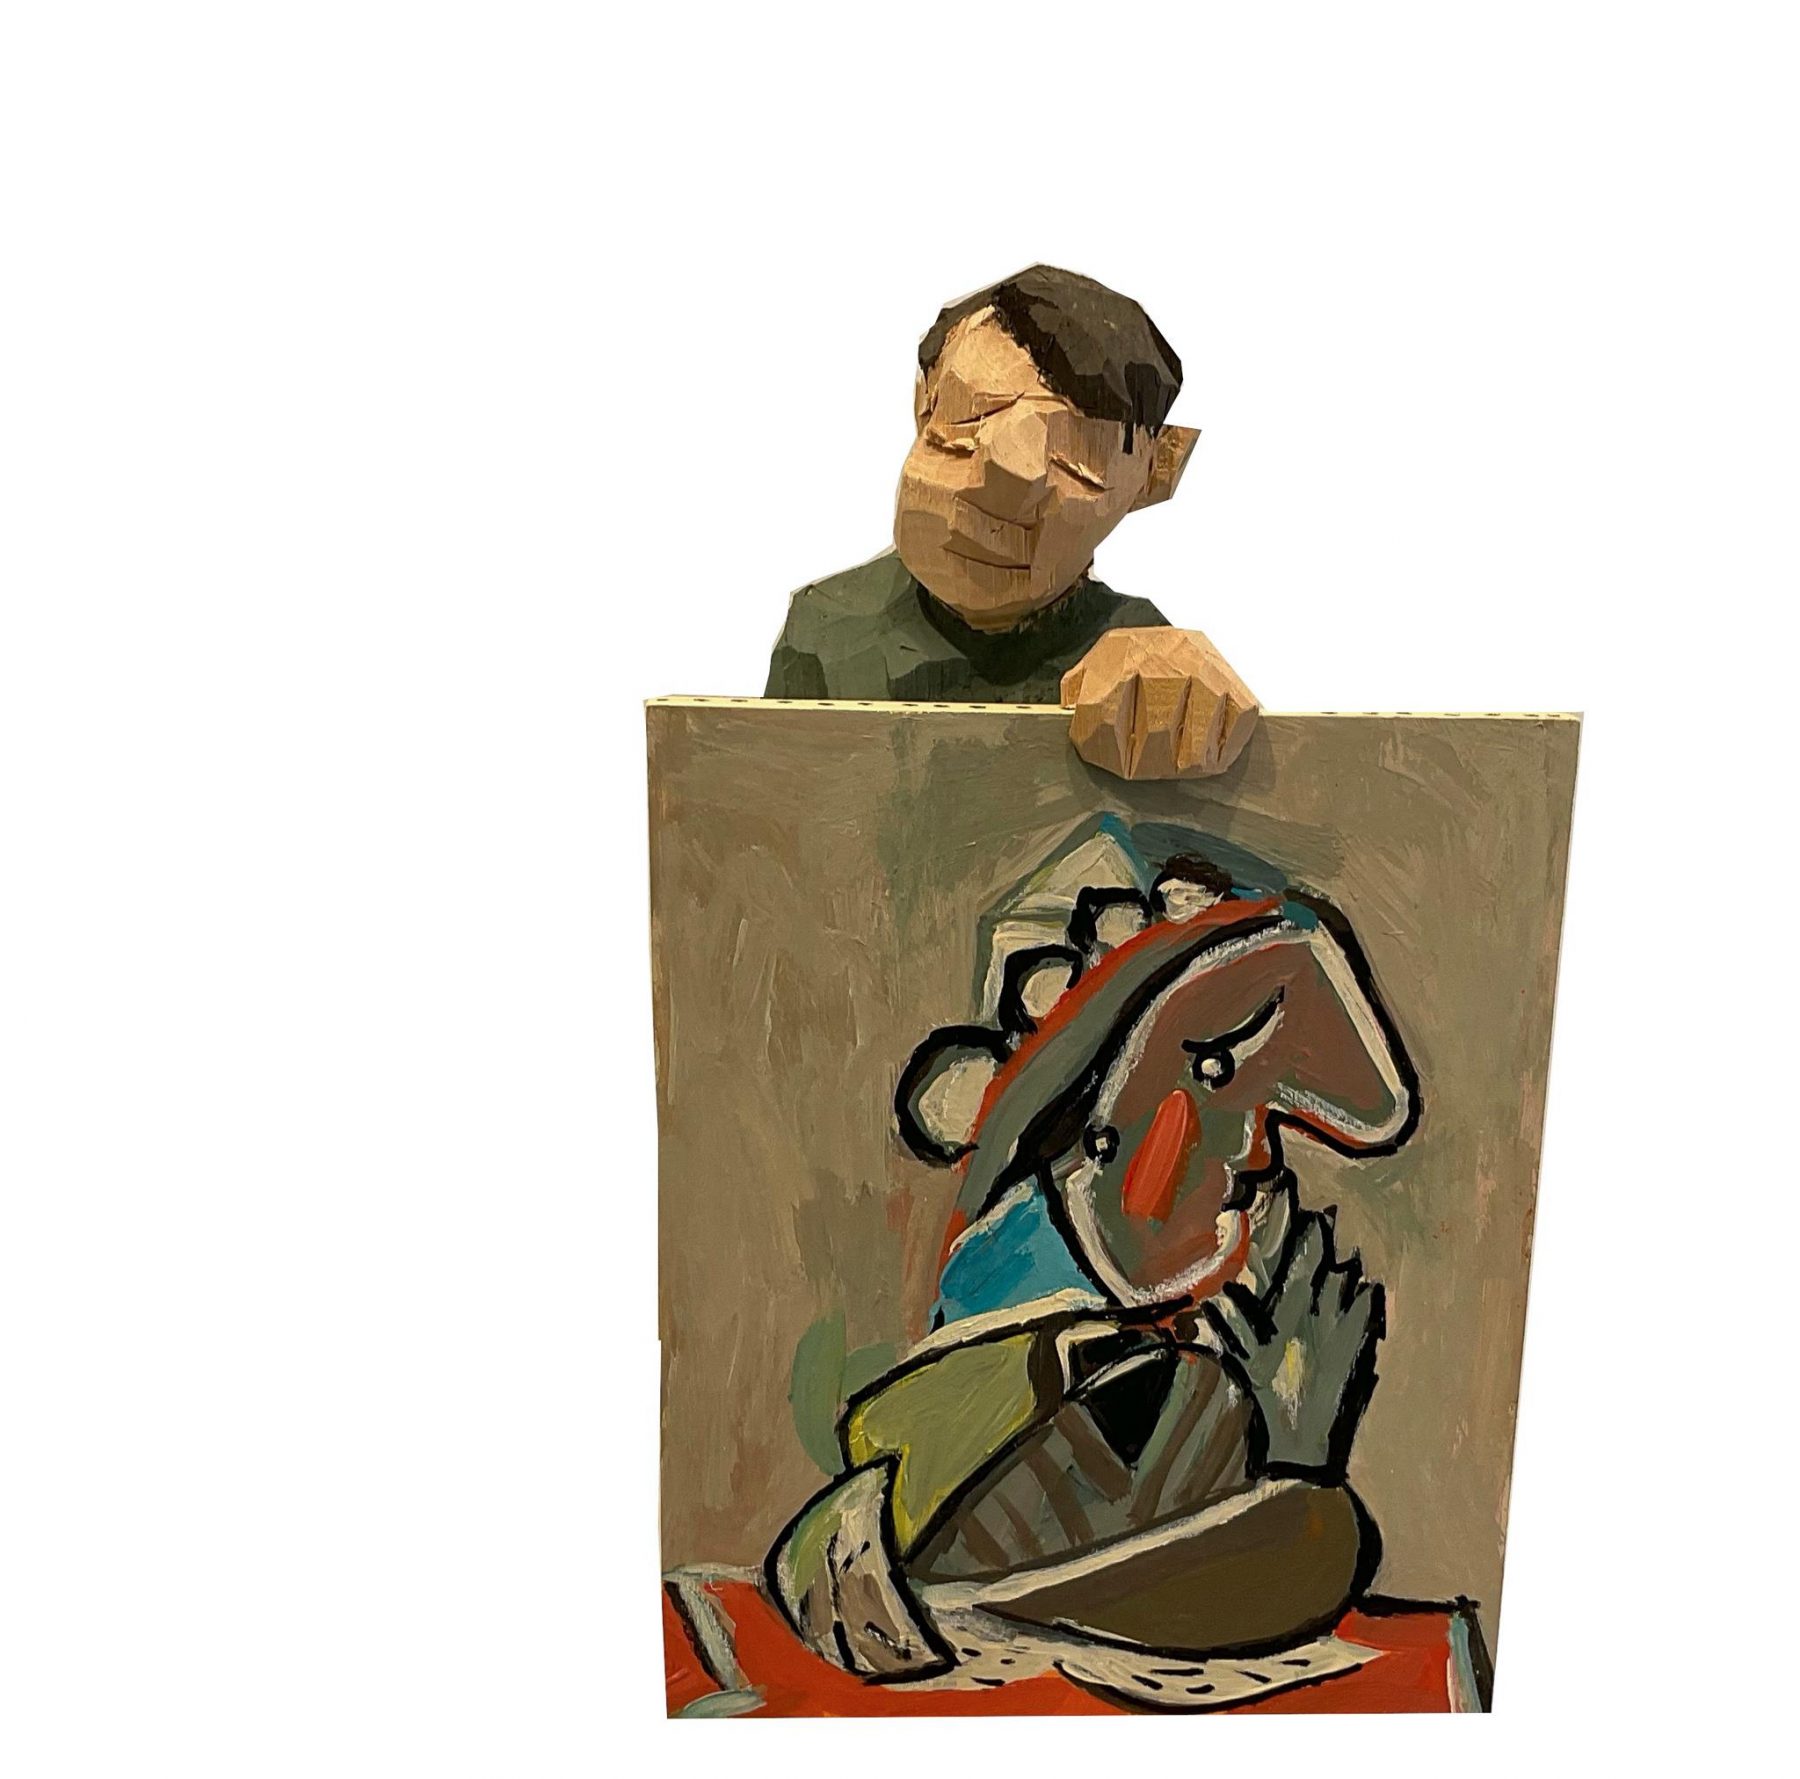 Mann mit Bild (Picasso) - Schulz, Georg - k-GS2247